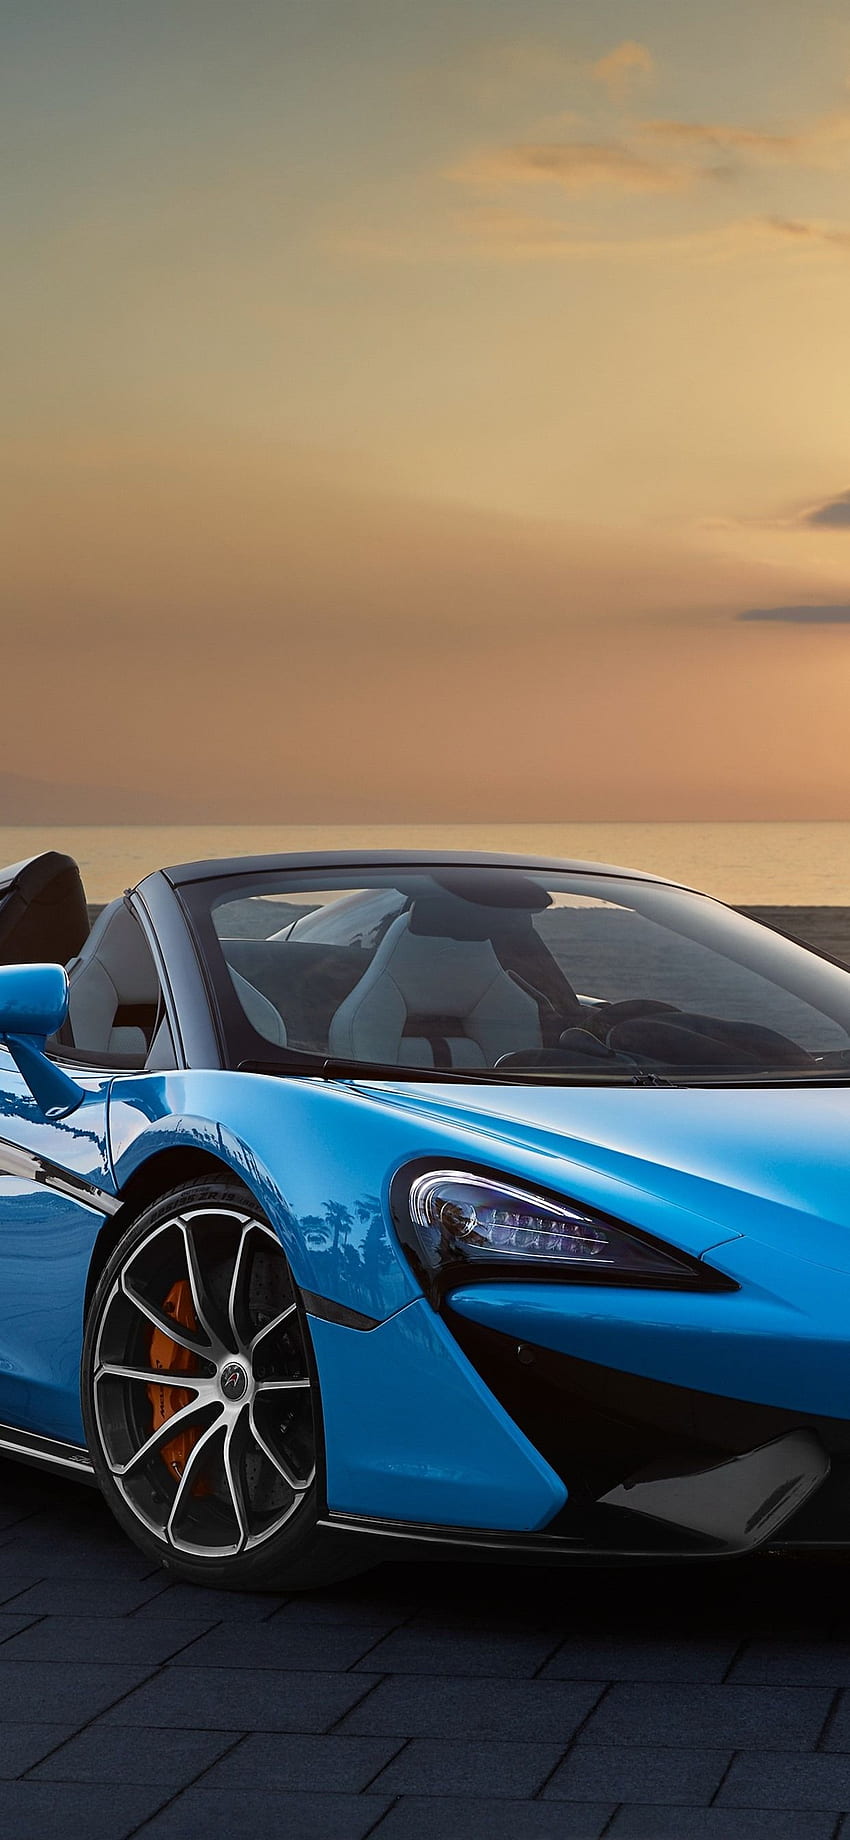 McLaren 570S mavi üstü açık araba, gün batımı, deniz iPhone HD telefon duvar kağıdı